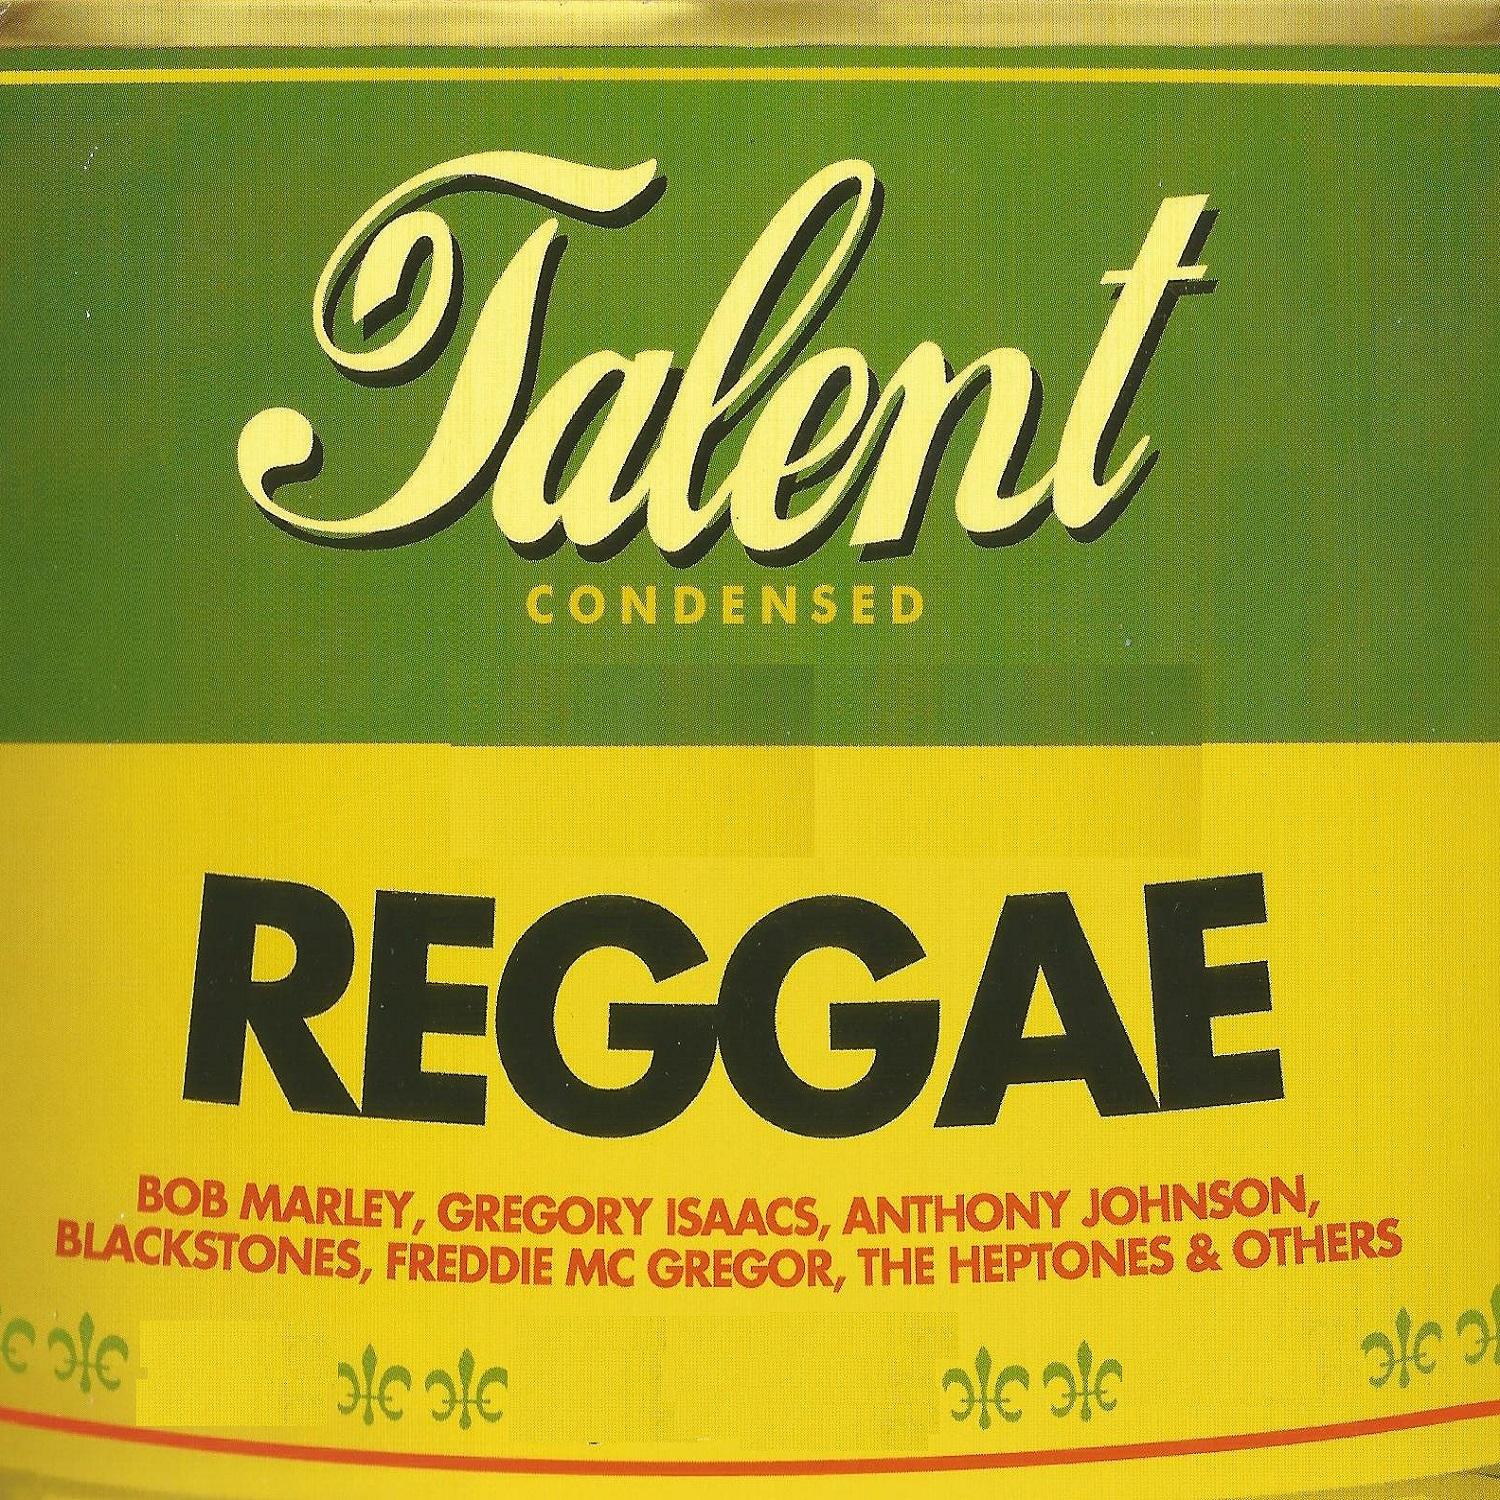 Reggae Talent Condensed